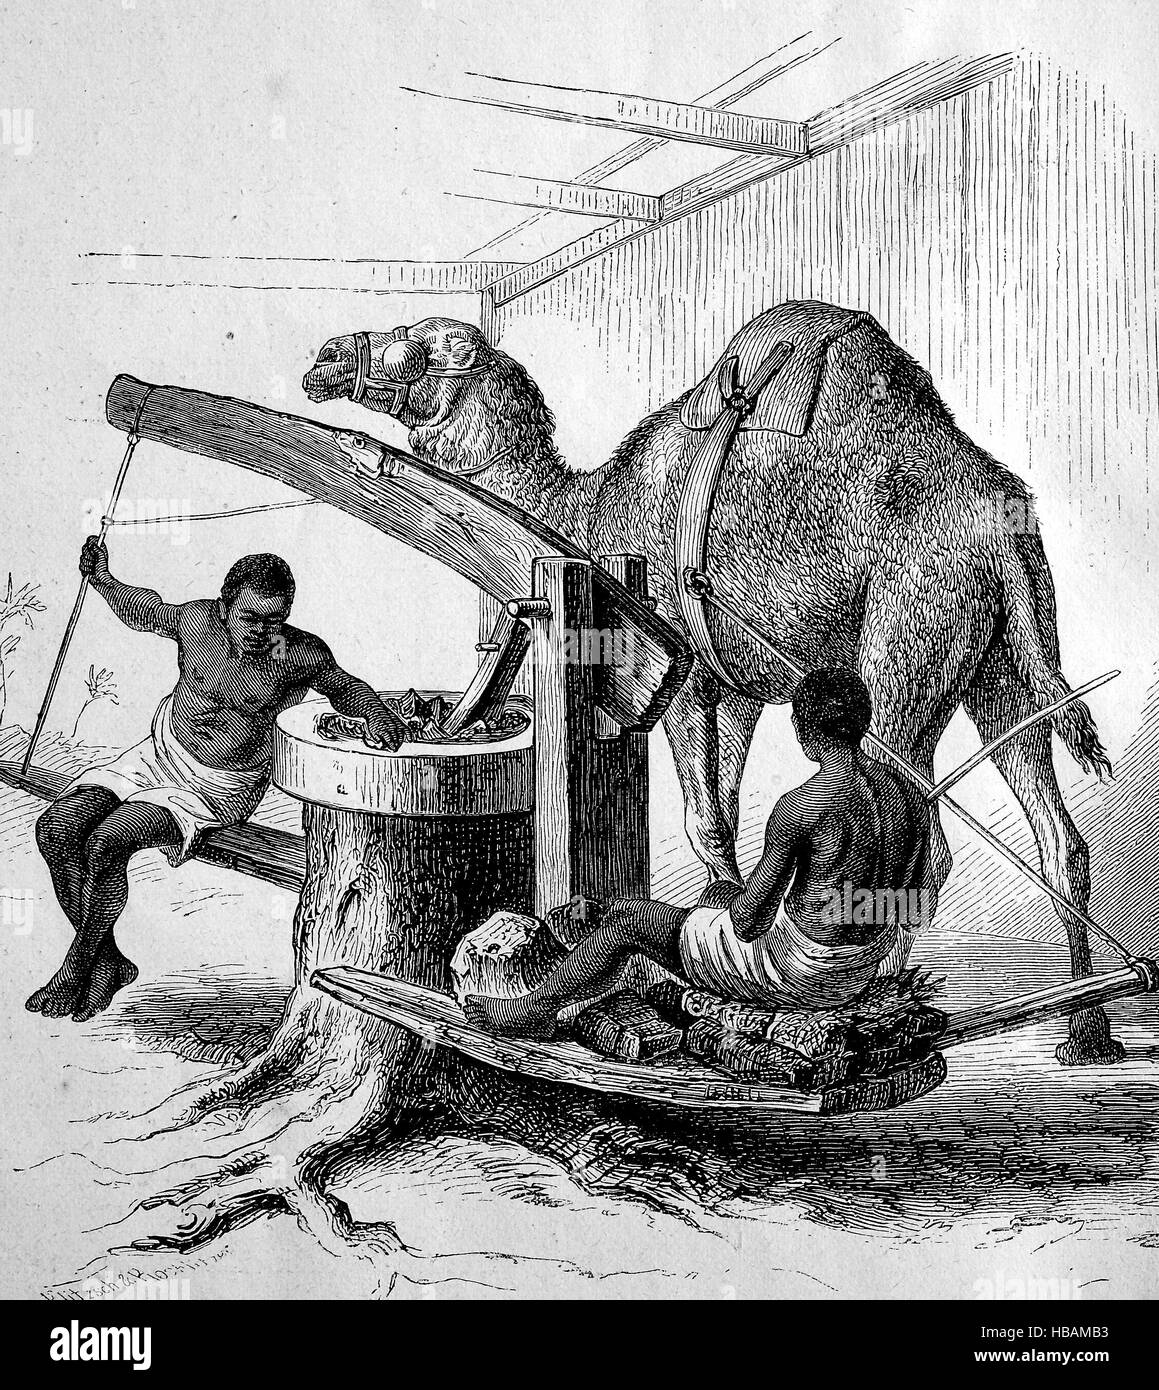 Molino de aceite, un molino con un camello, Isla os Sansibar, Zanzíbar hictorical ilustración desde 1880 Foto de stock